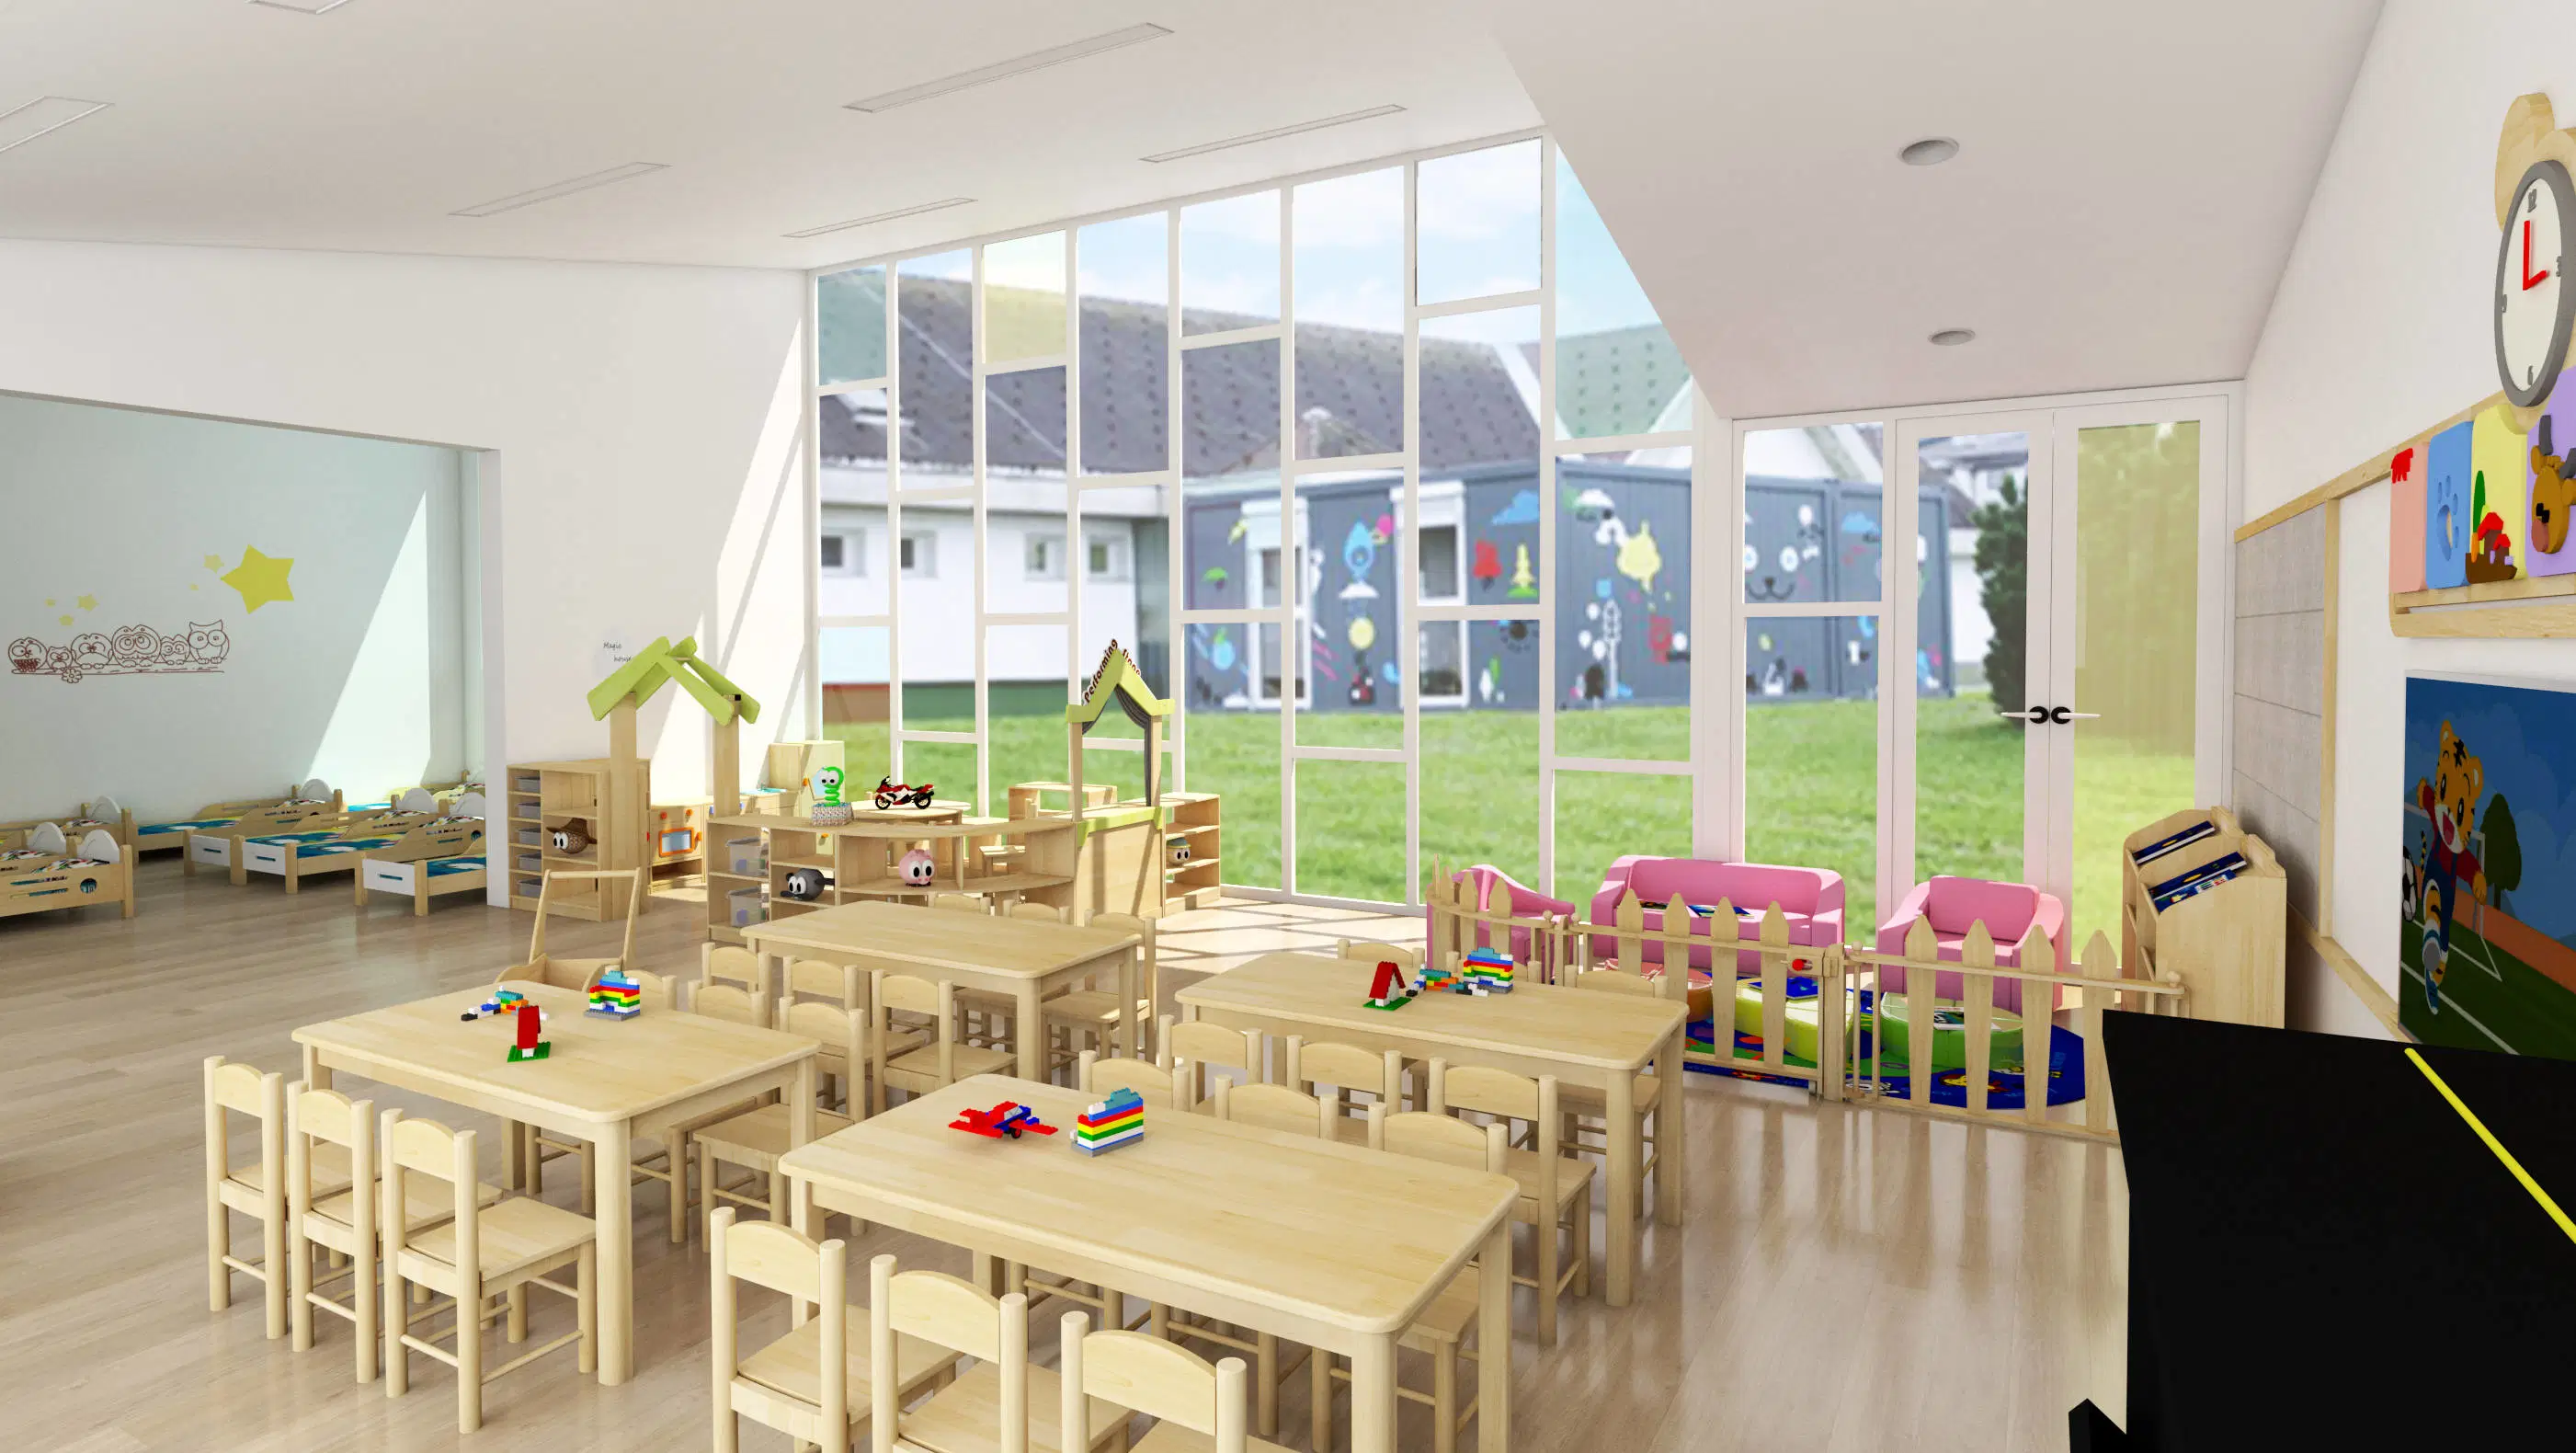 Kinder Holzstuhl, Schüler Tischstuhl, Kind Schreibtischstuhl, Schule Klassenzimmer Stuhl, Baby Moderne Möbel, Vorschule und Kinderstuhl, Möbel Stuhl